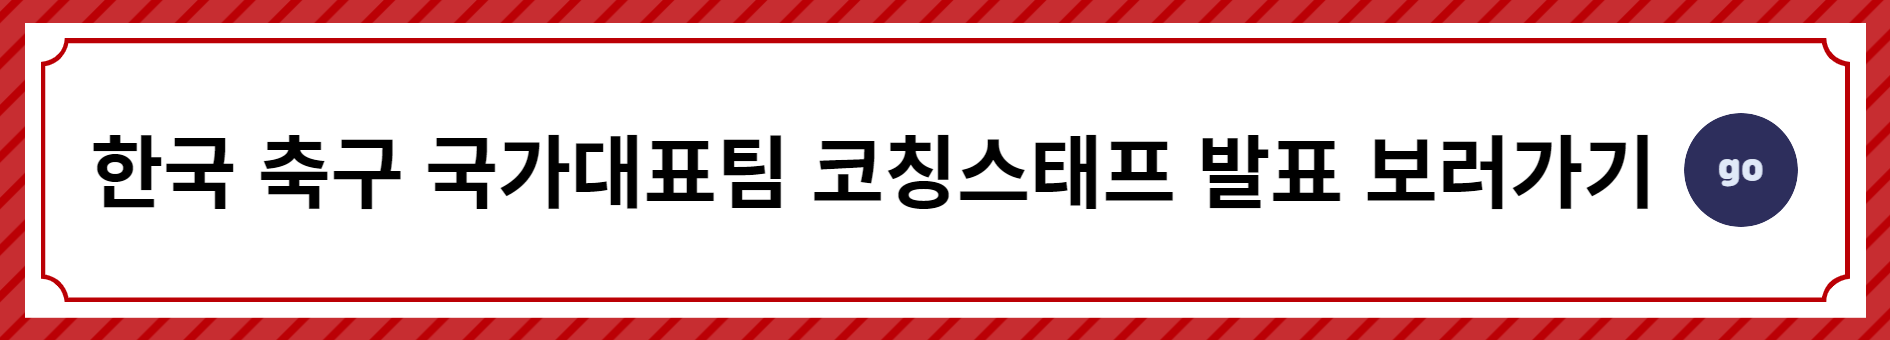 대한민국-국가대표팀-클린스만감독-기자회견